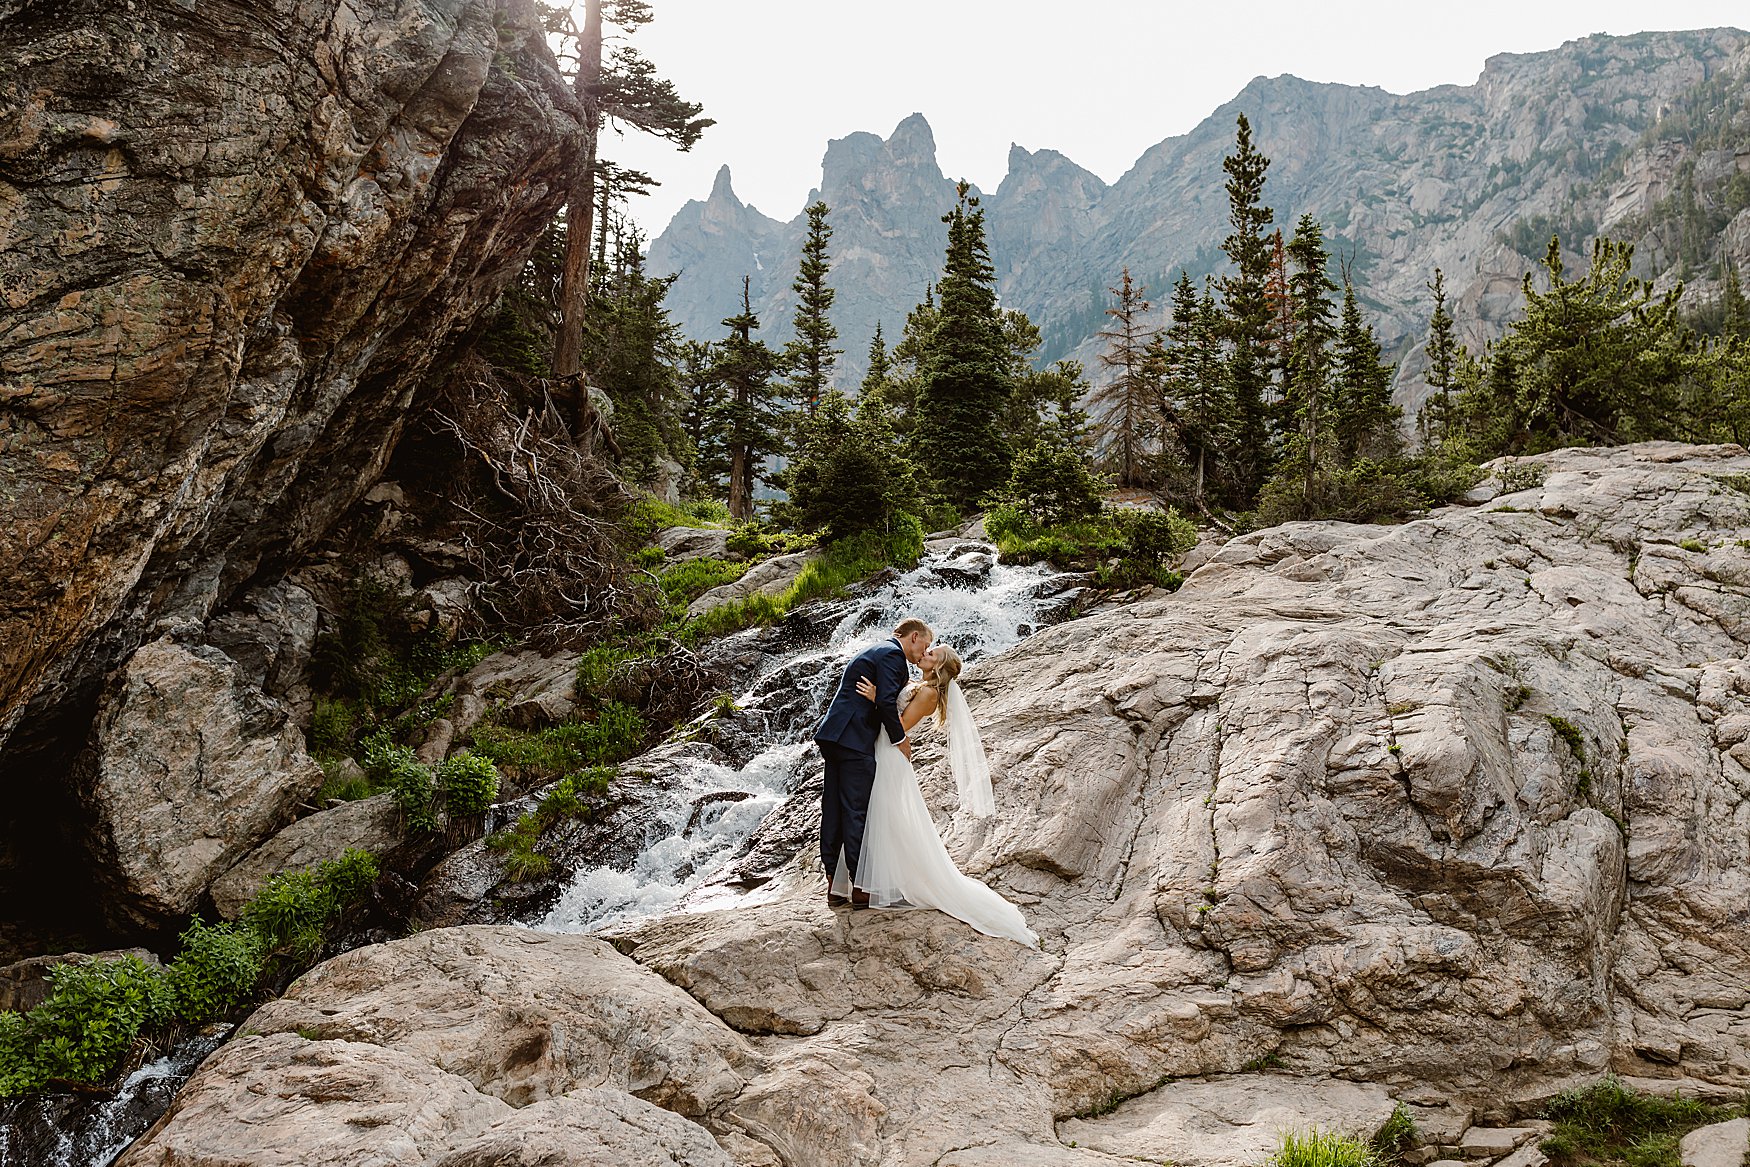 Colorado elopement photos taken in Rocky Mountain National Park